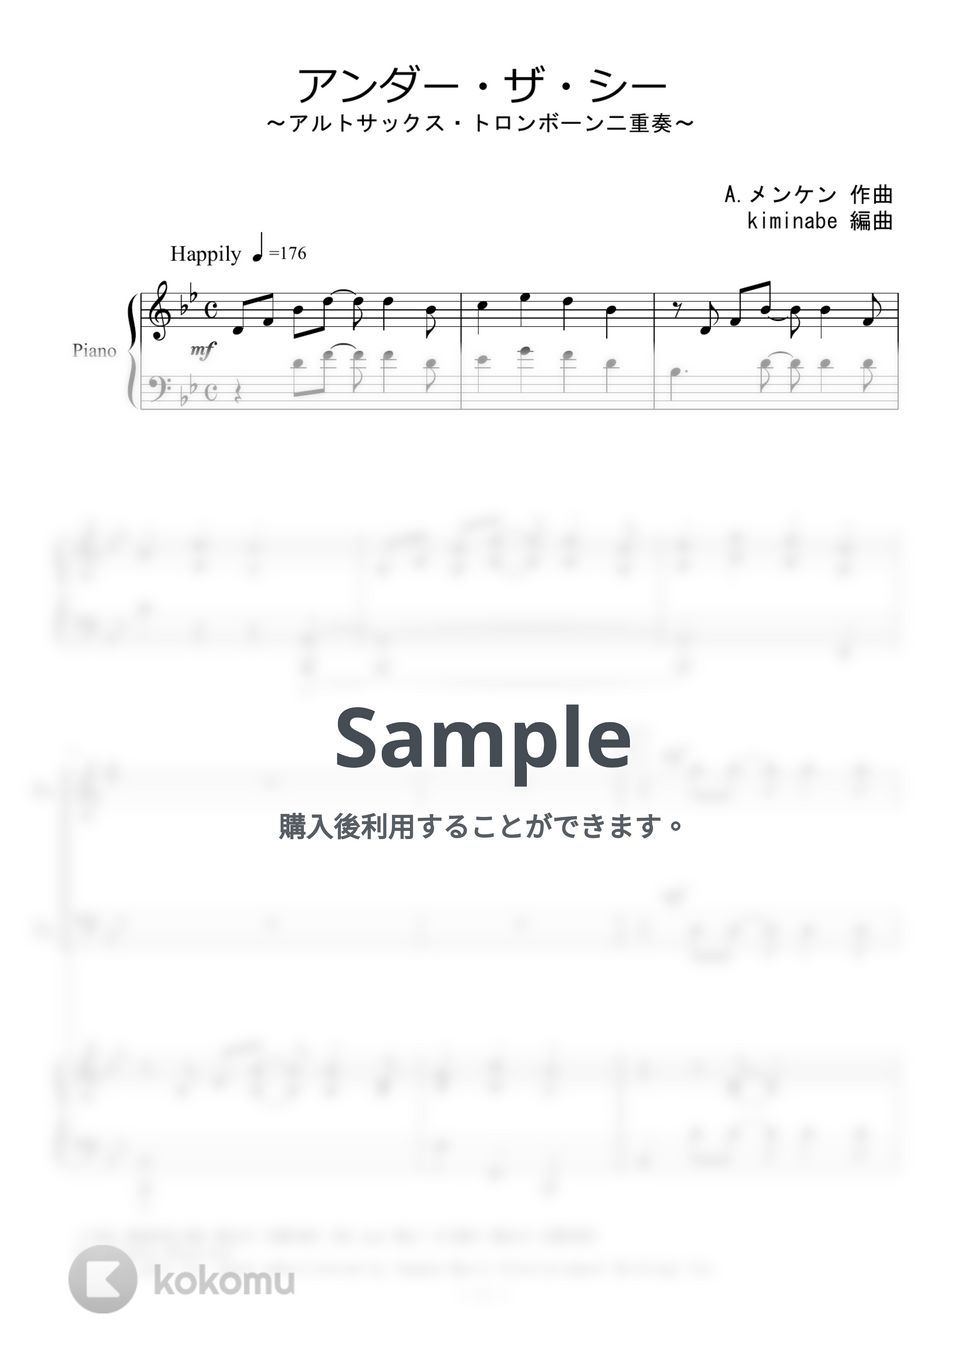 リトルマーメイド - アンダー・ザ・シー (アルトサックス・トロンボーン二重奏) by kiminabe